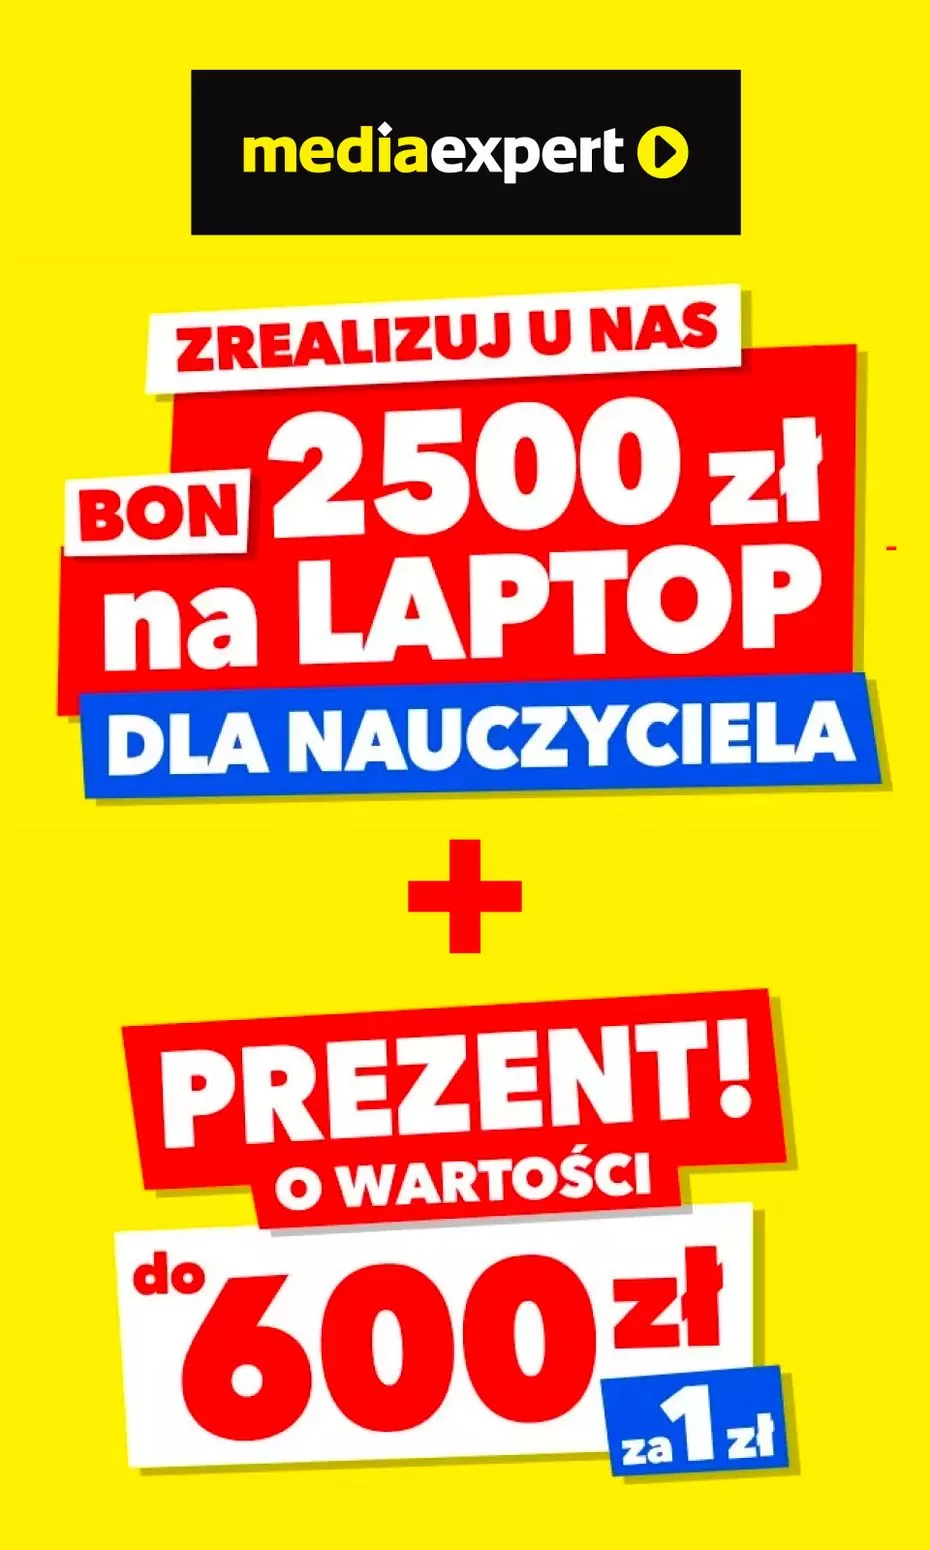 
                        Gazetka promocyjna Media Expert. Tytuł: Bon 2500 zł na laptop dla nauczyciela. Oferta obowiązuje: 2023-11-09 - 2023-11-30